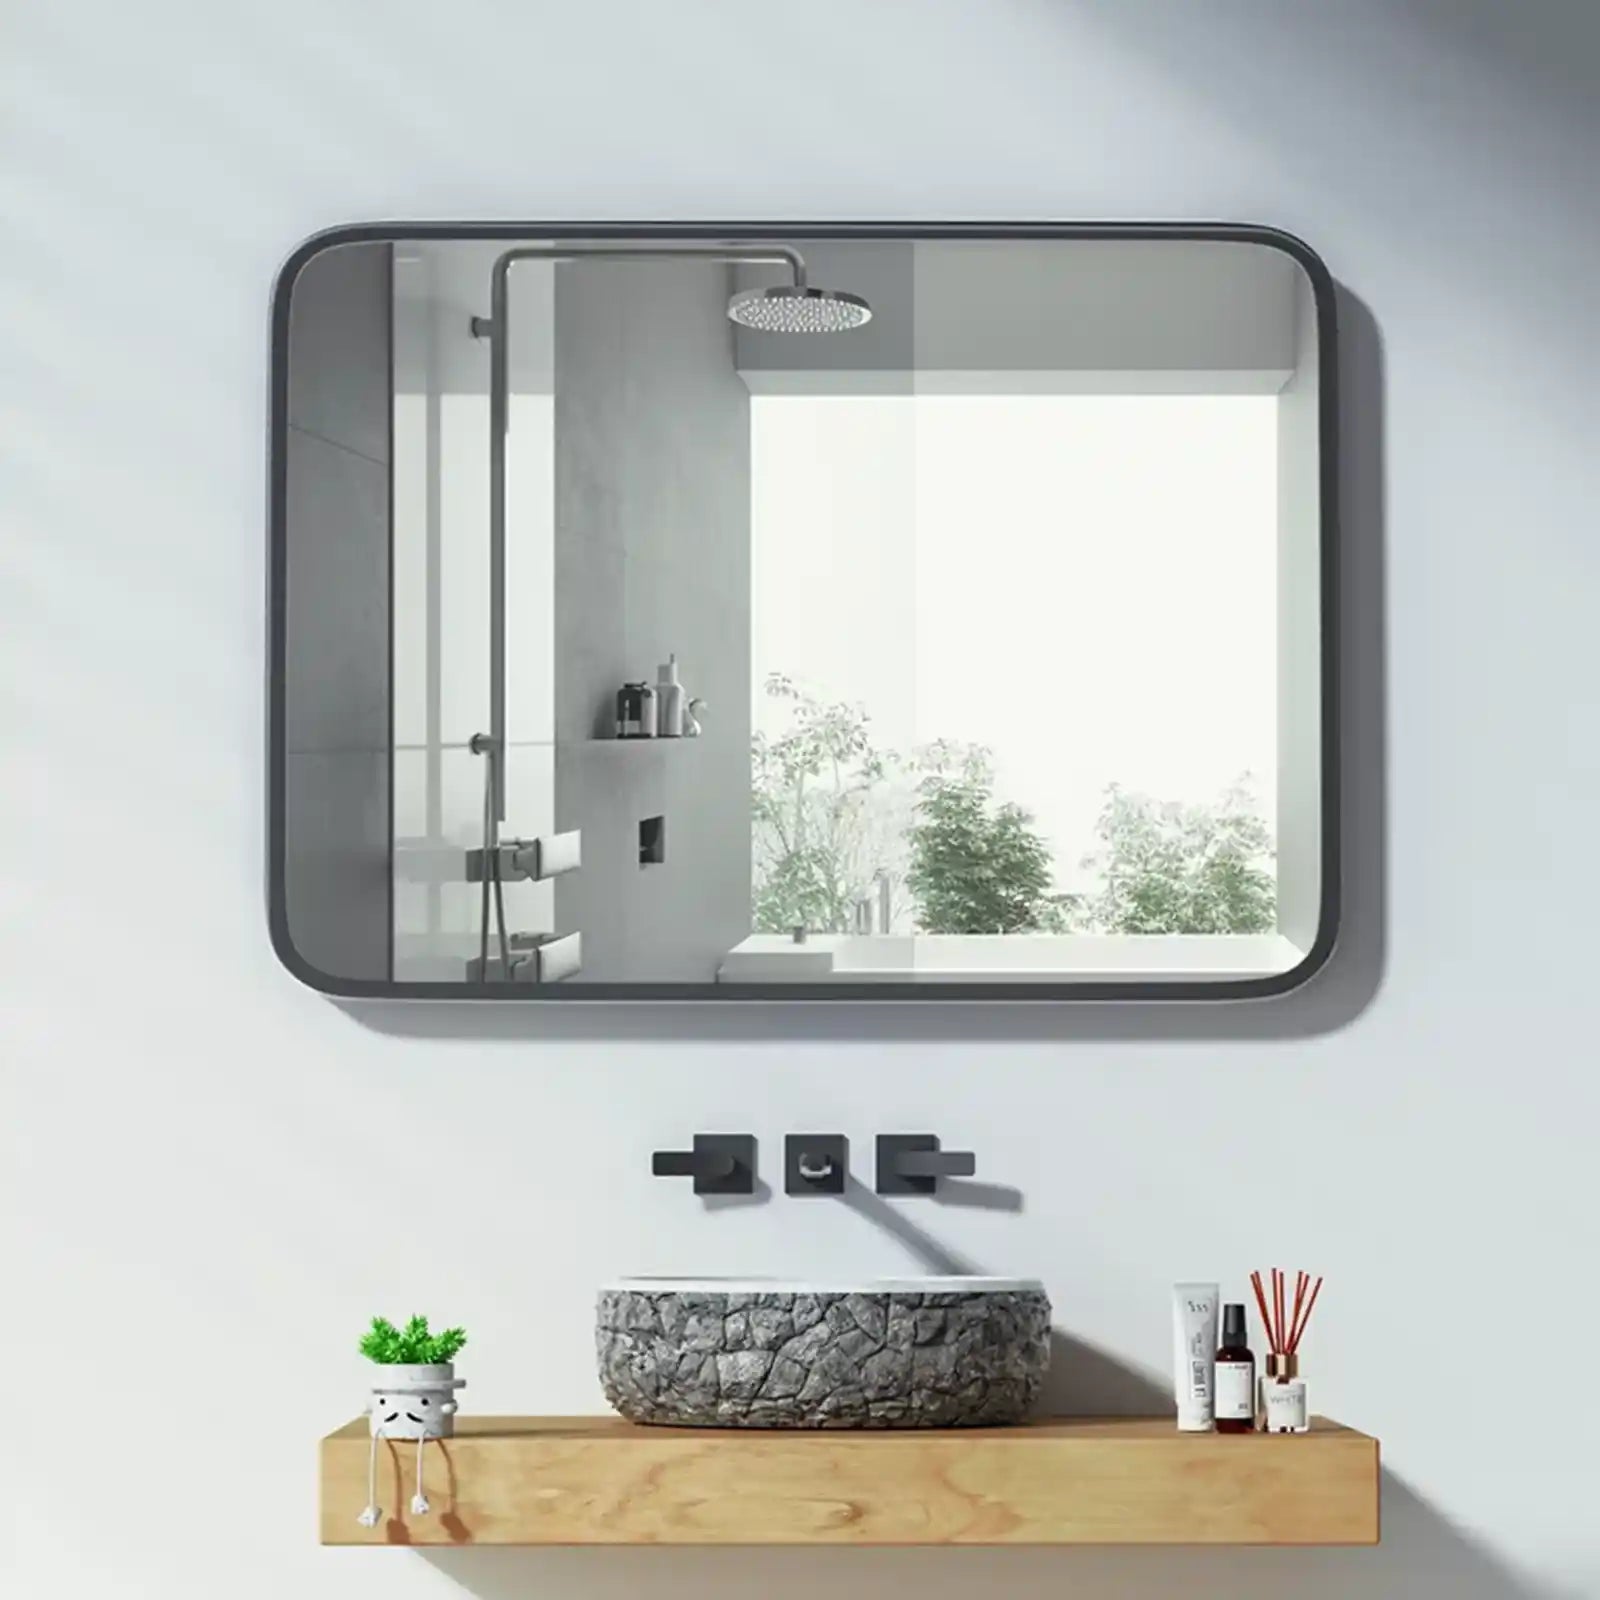 Espejo de baño, espejo de tocador montado en la pared, 28.0 x 35.8 in, espejos de pared rectangulares de esquina redondeada, decoración del hogar, espejo de baño con marco de metal para sala de estar, dormitorio, cuelga horizontal o vertical